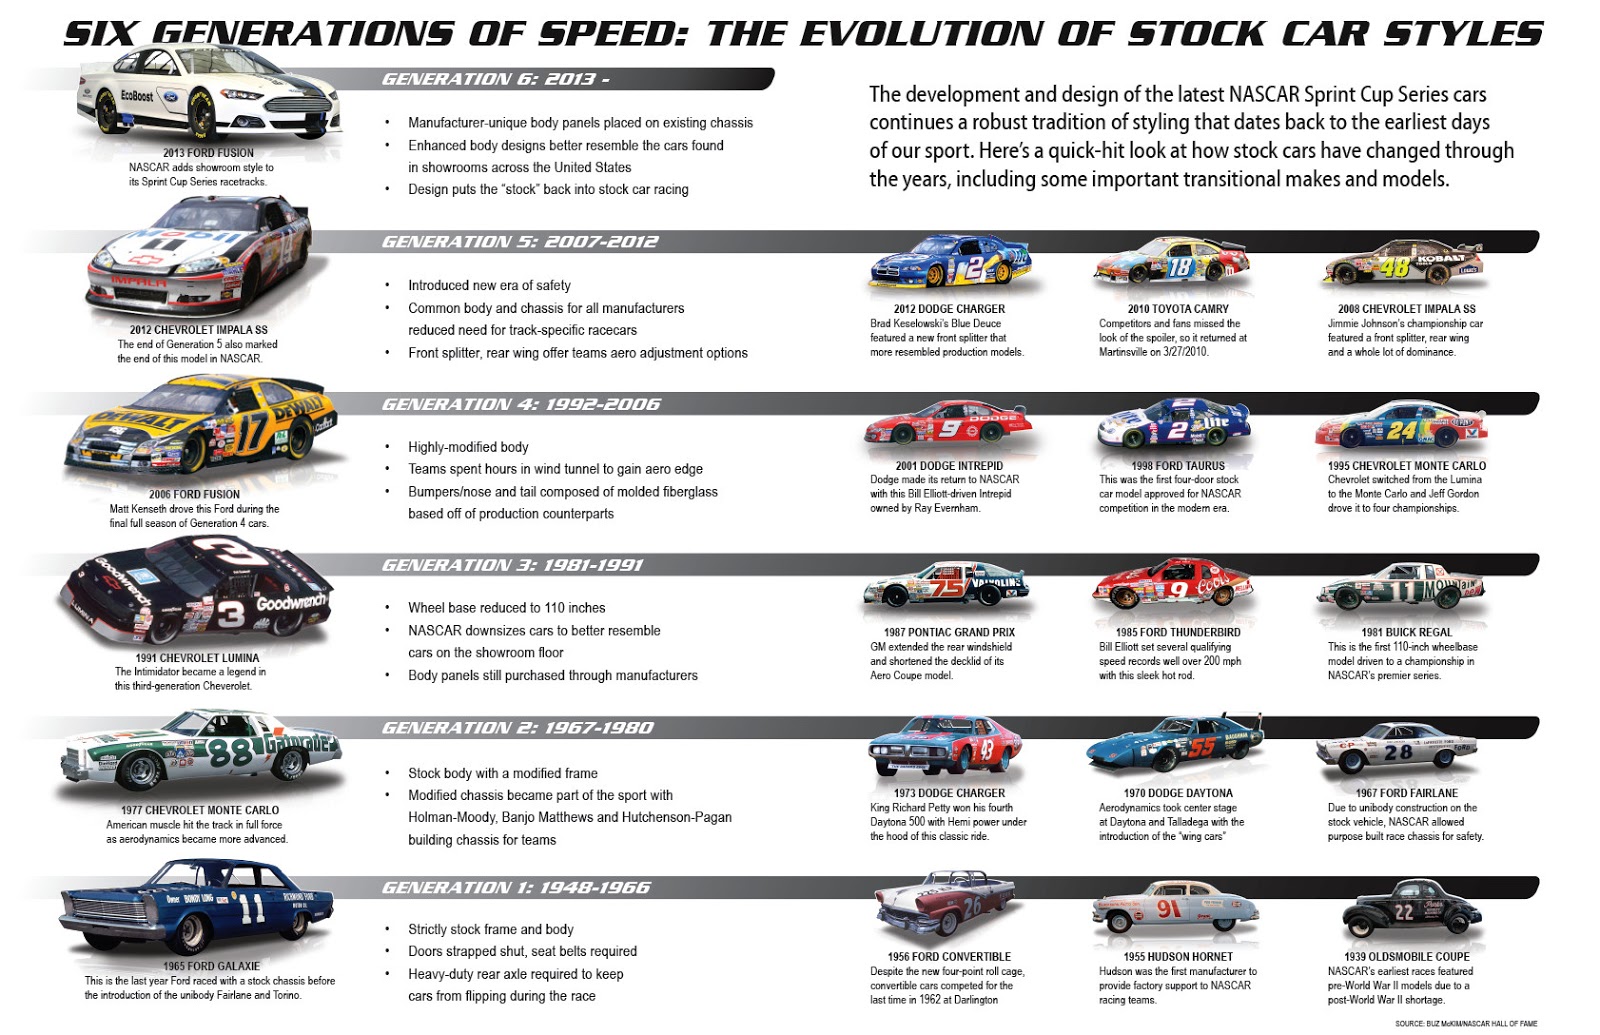 A evolução tecnológica dos carros da NASCAR - Tomada de Tempo